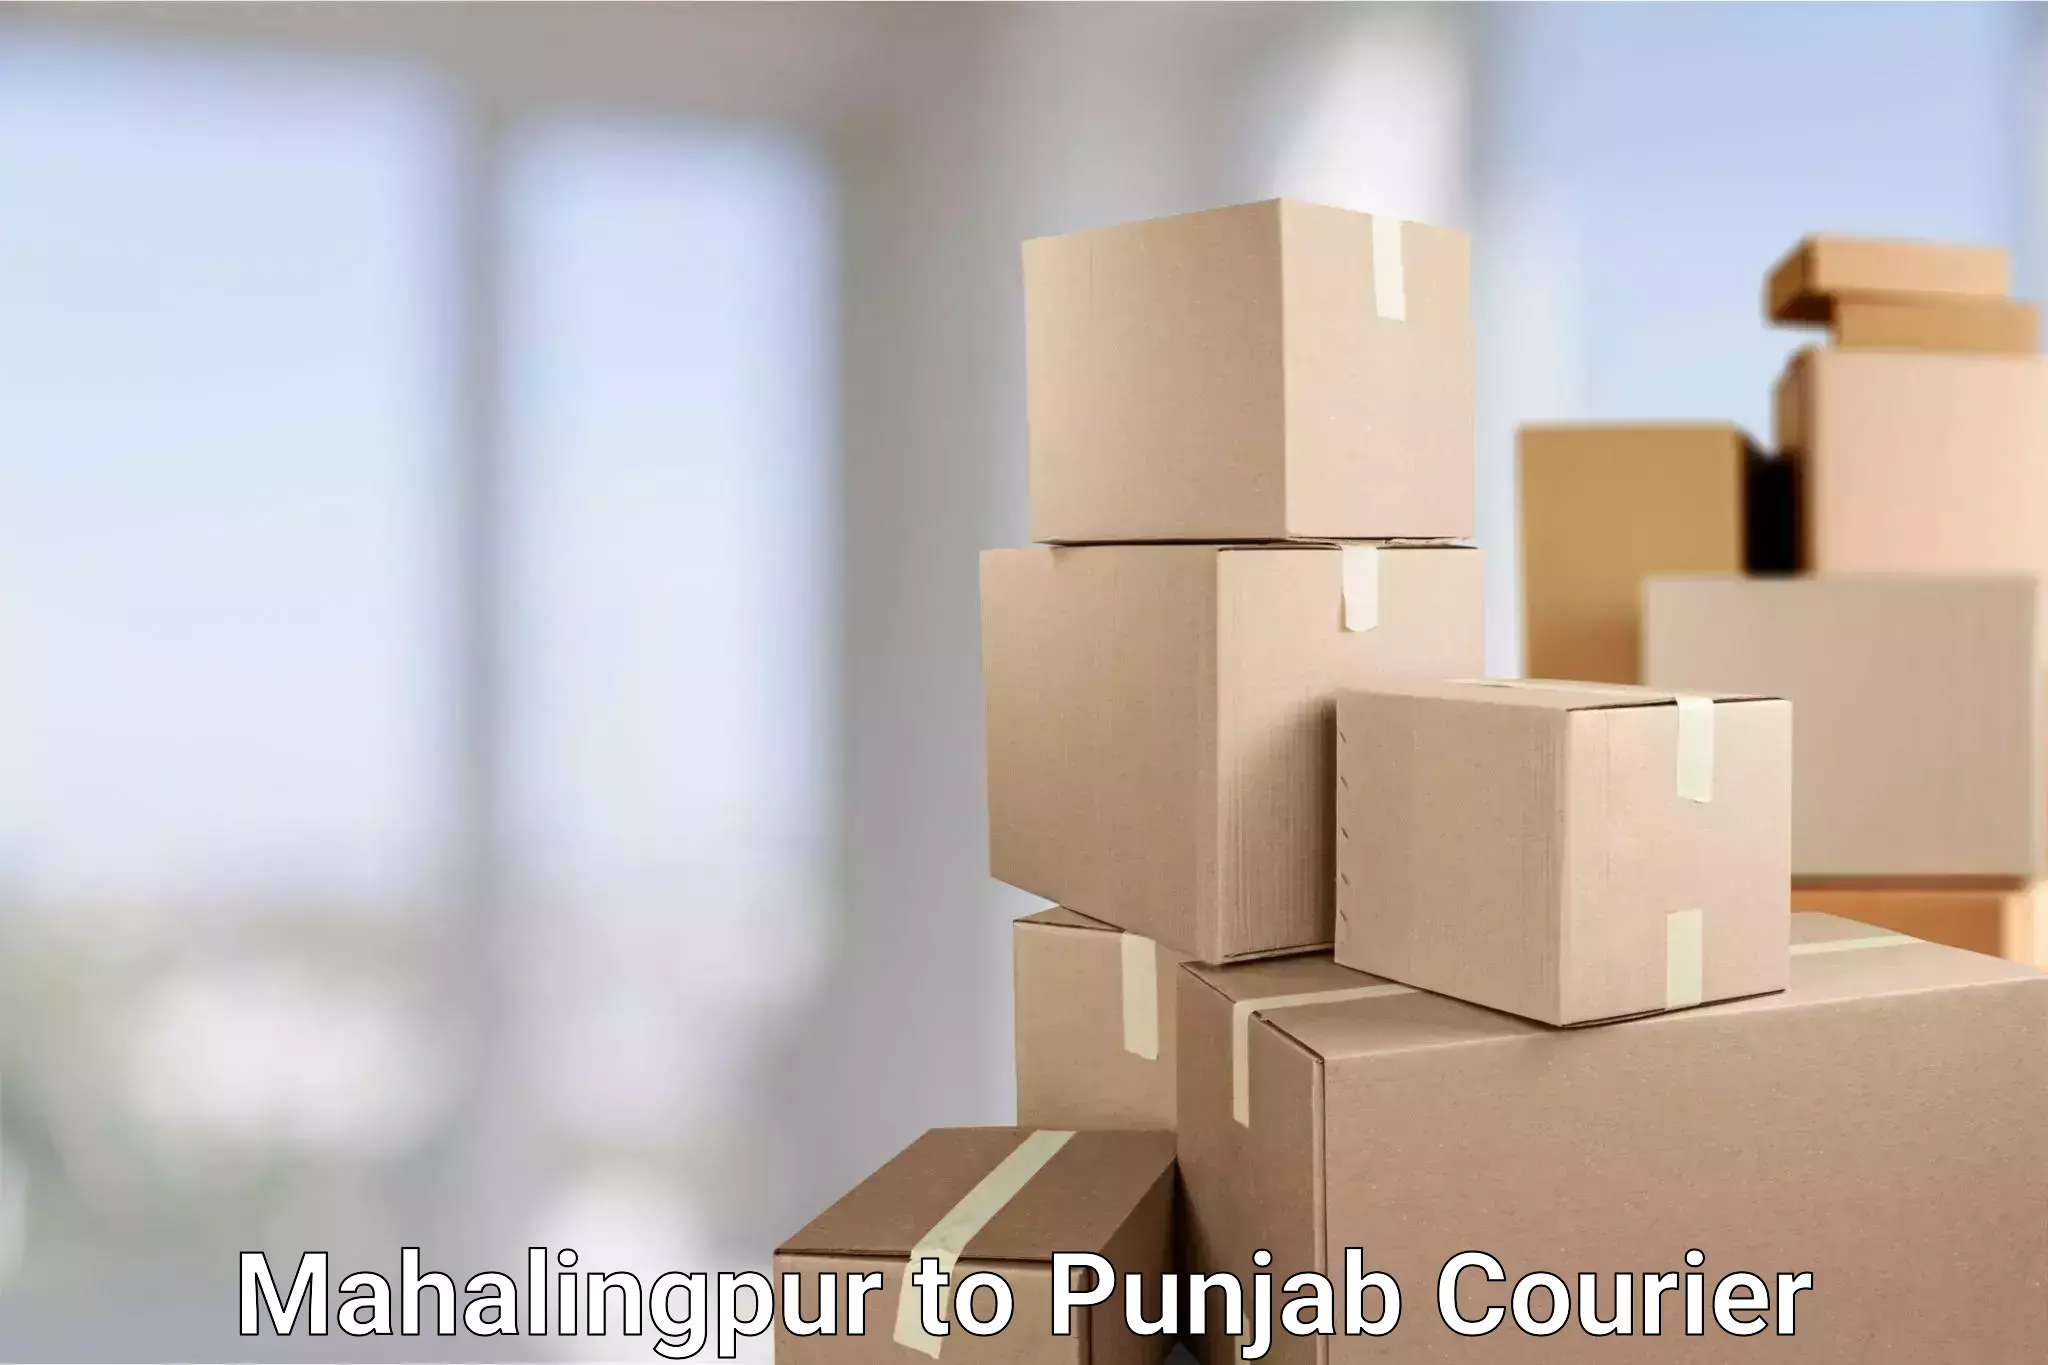 Efficient shipping operations Mahalingpur to Goindwal Sahib